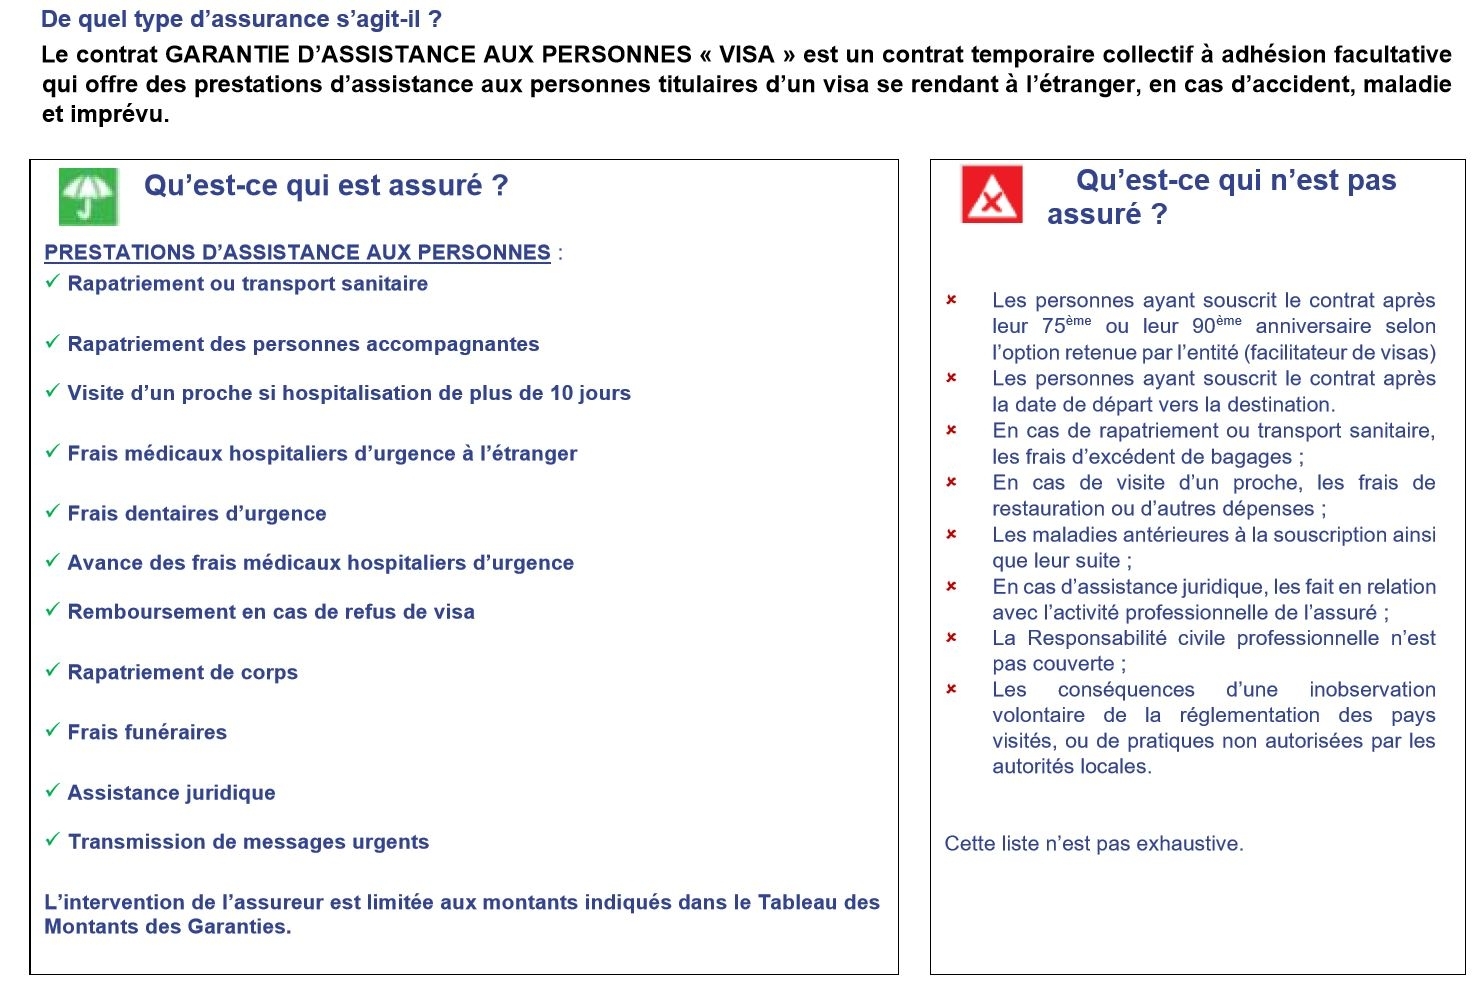 Assurance voyage - Visa Schengen